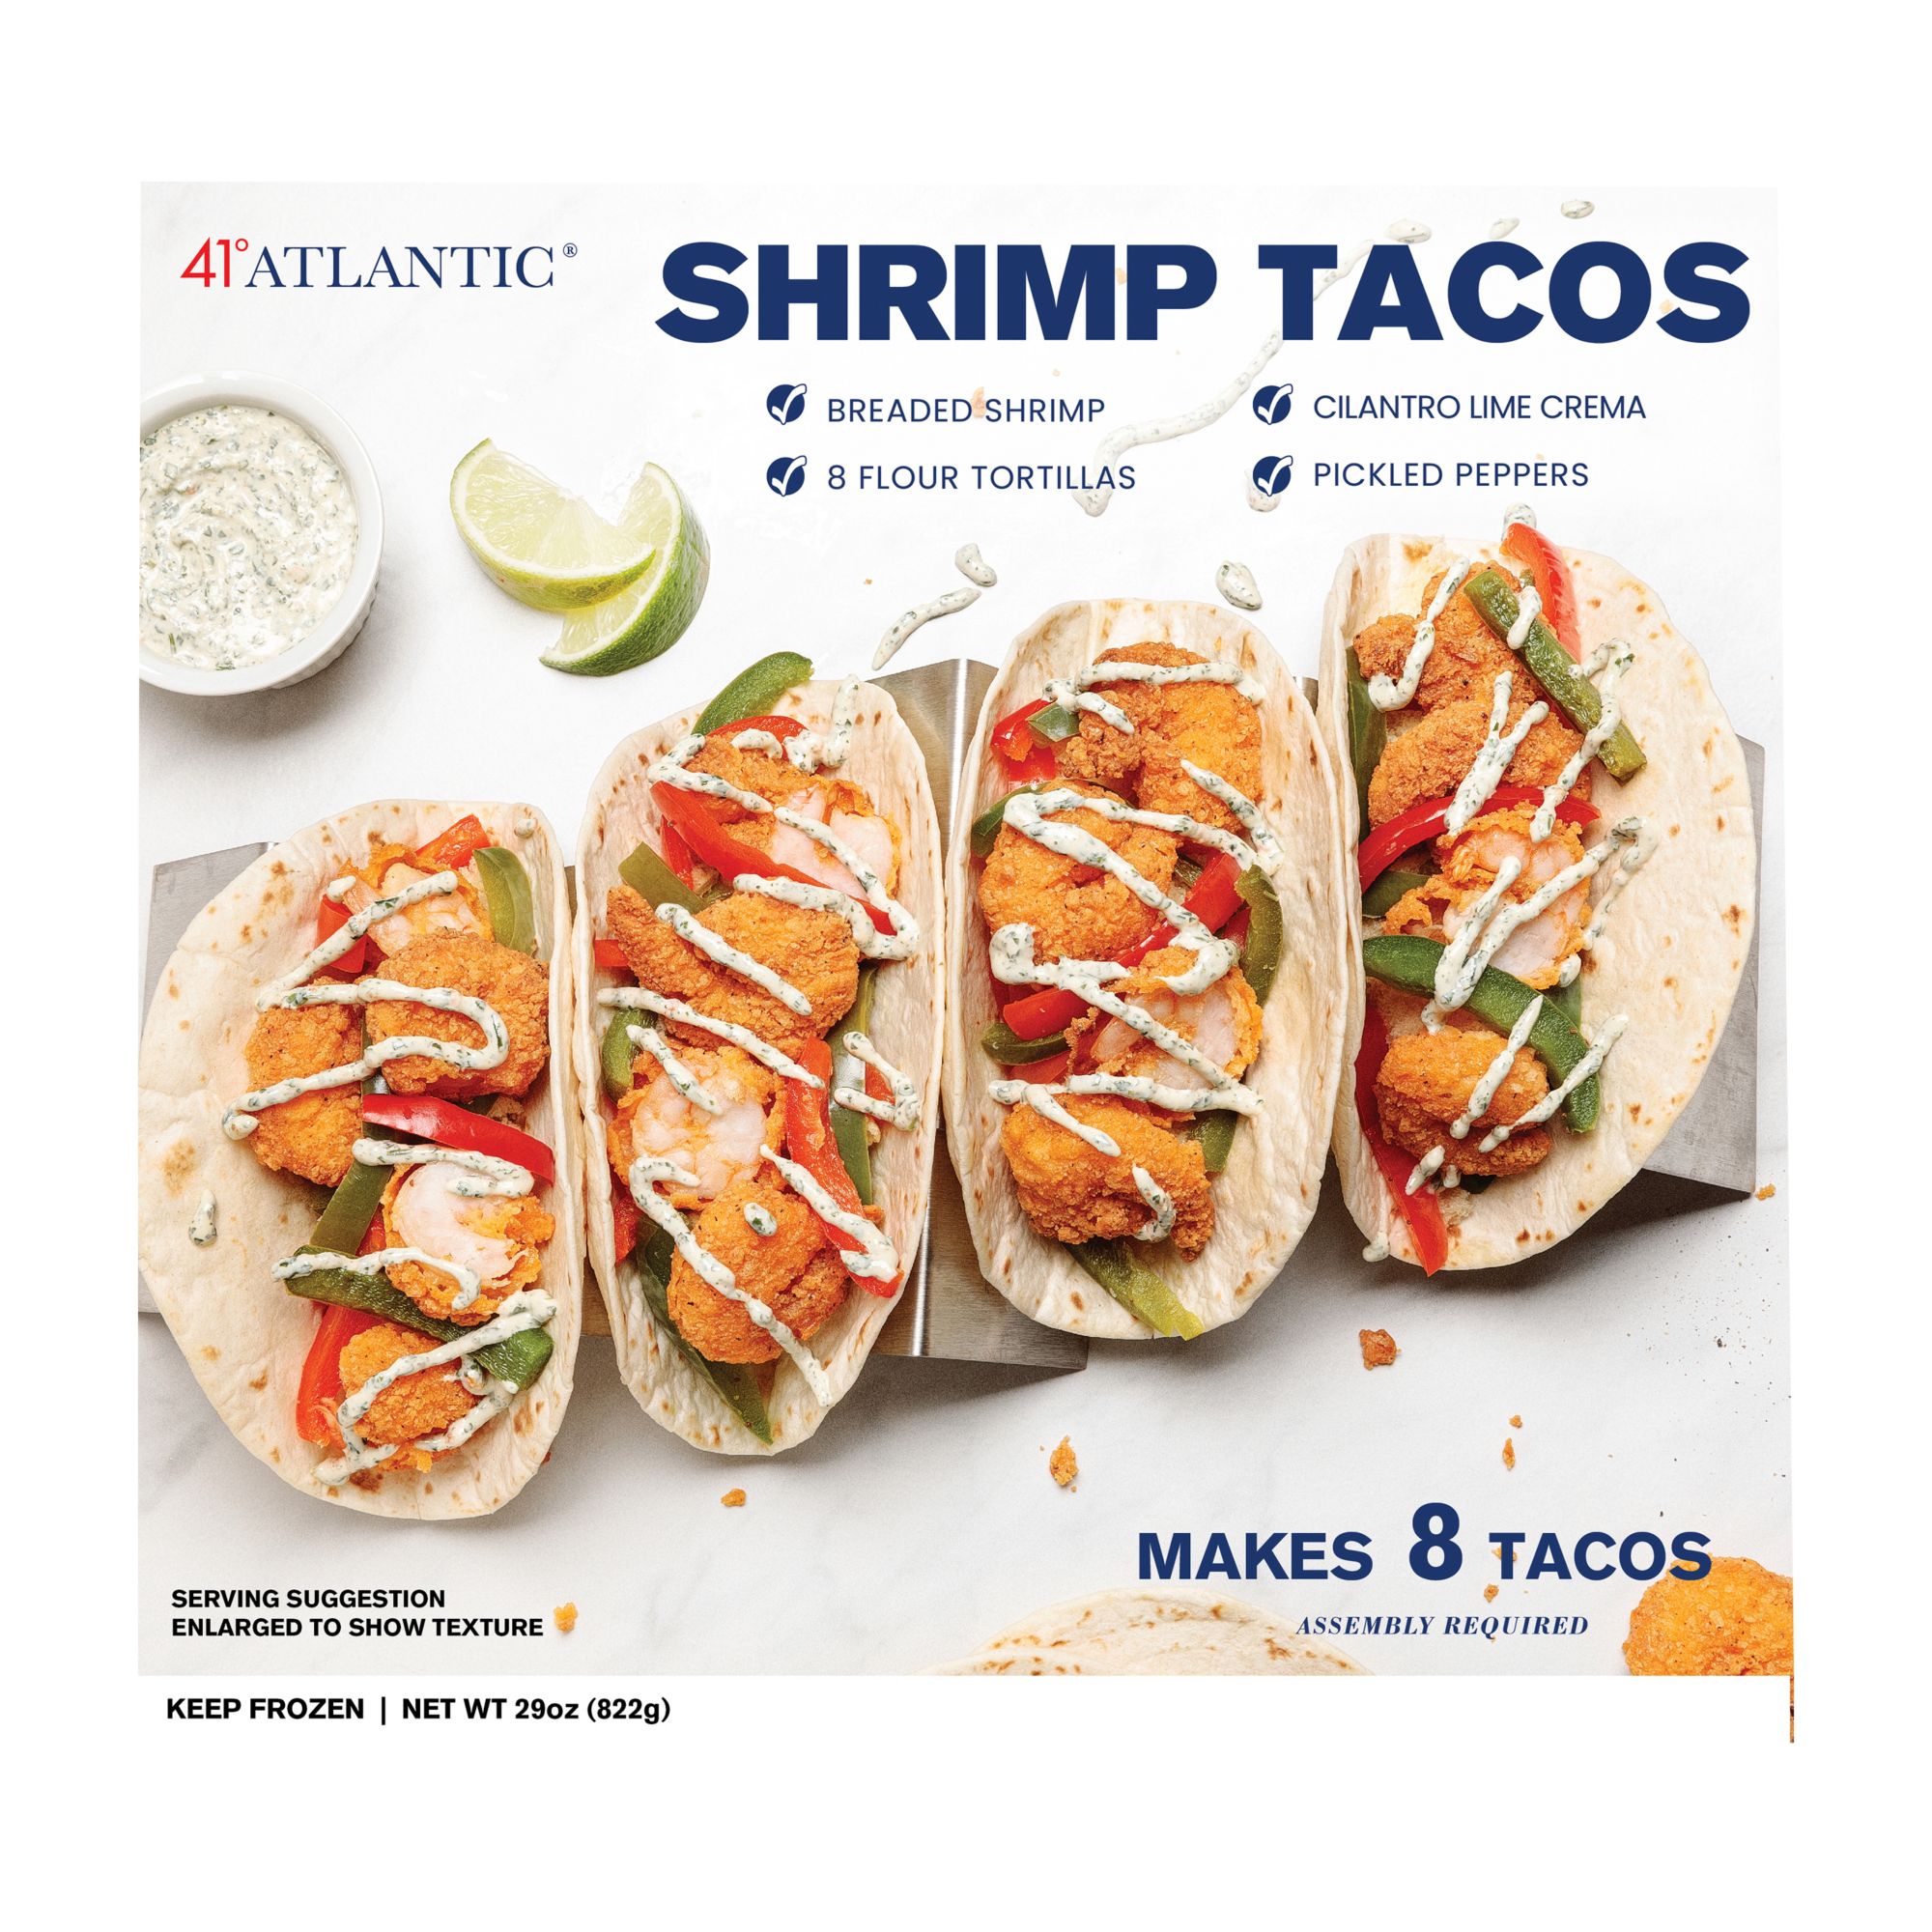 East Coast Seafood Shrimp Taco Kit, 1.875 lbs.